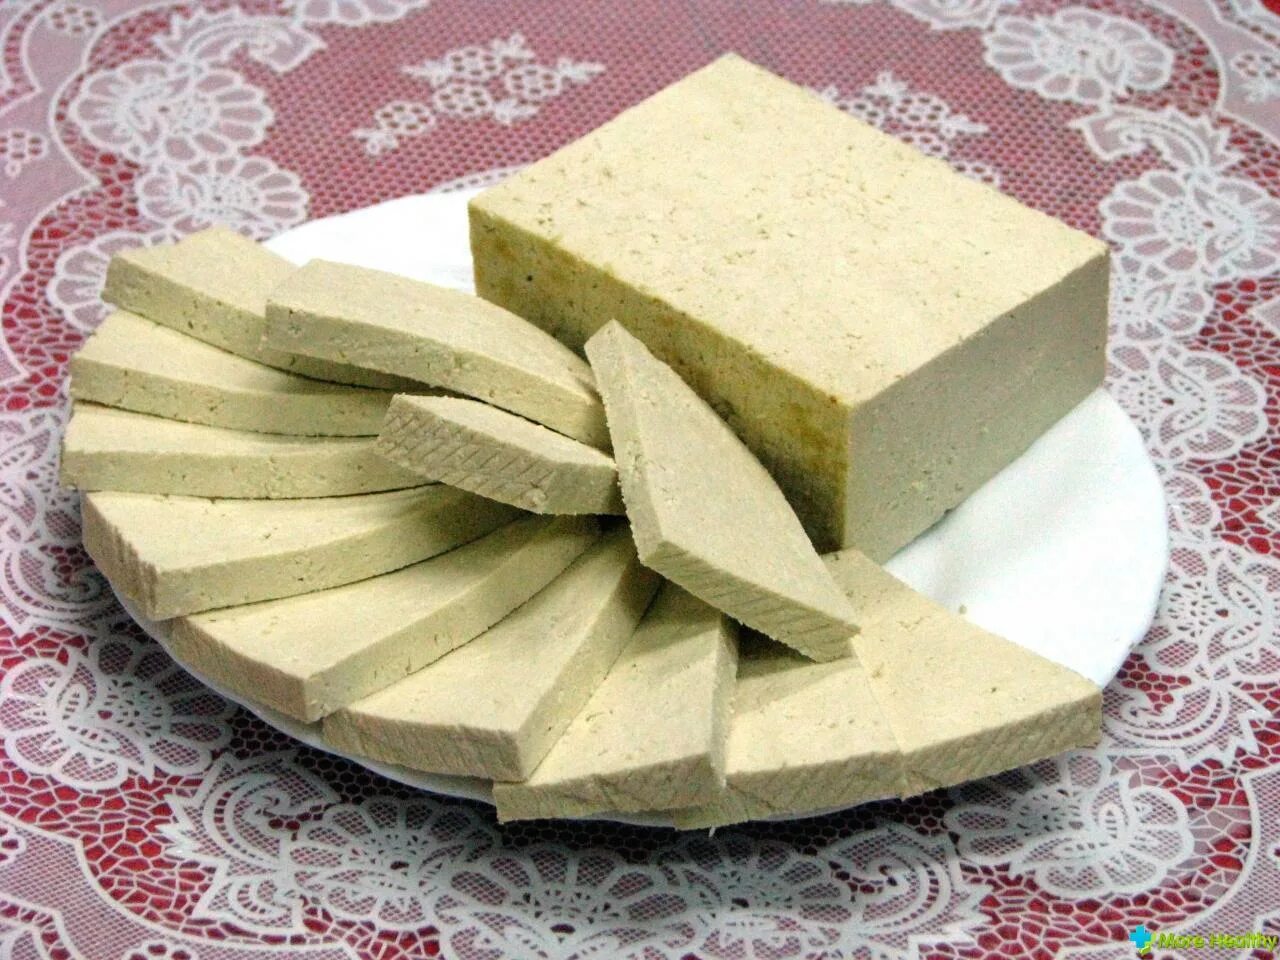 Сыр тофу из чего делают польза. Сыр тофу. Соевый сыр название. Польза сыра тофу. Калорийность сыра тофу.